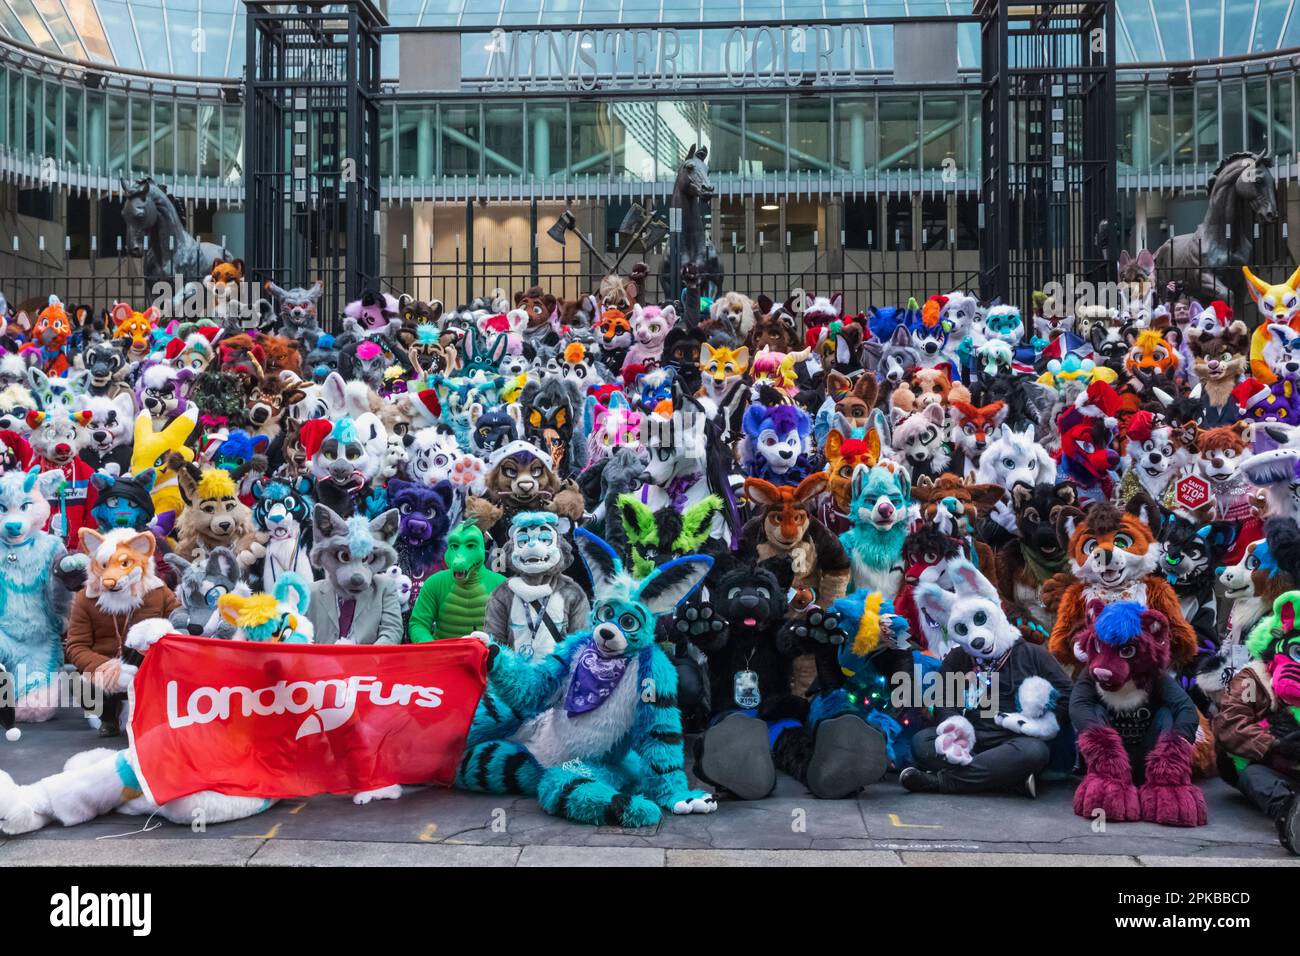 England, London, The City, Mitglieder der London Furs Community posieren für Group Photo Stockfoto